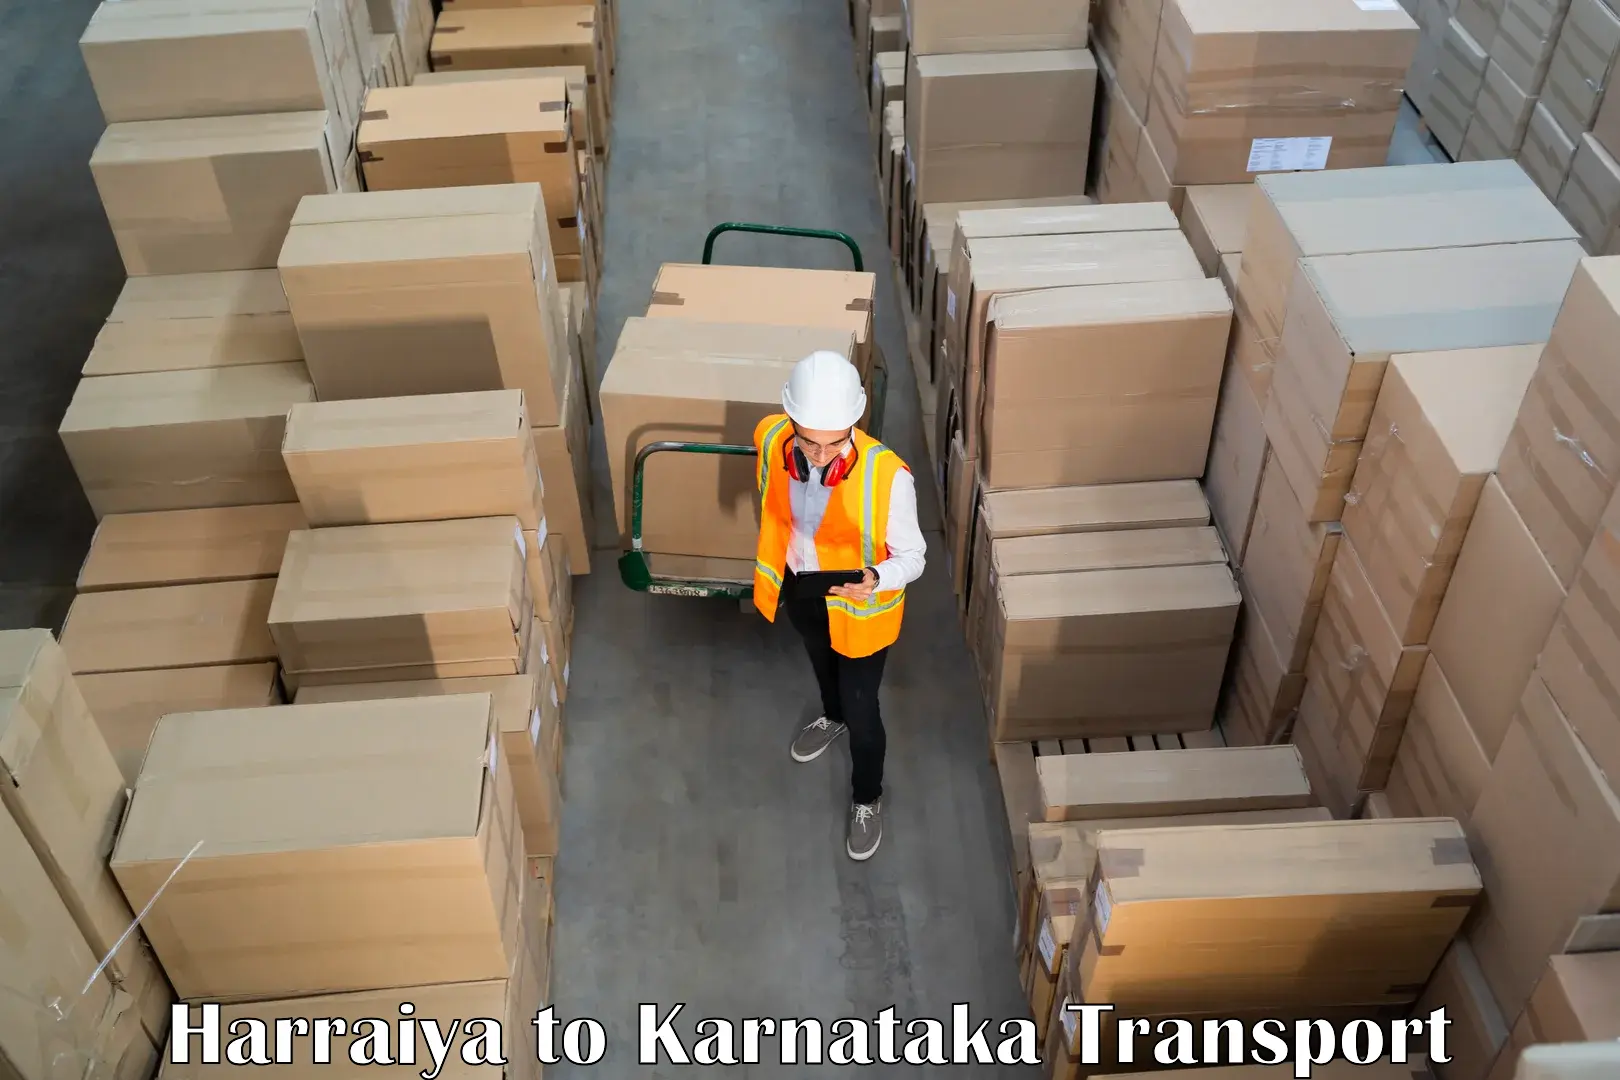 Interstate transport services Harraiya to Thirthahalli